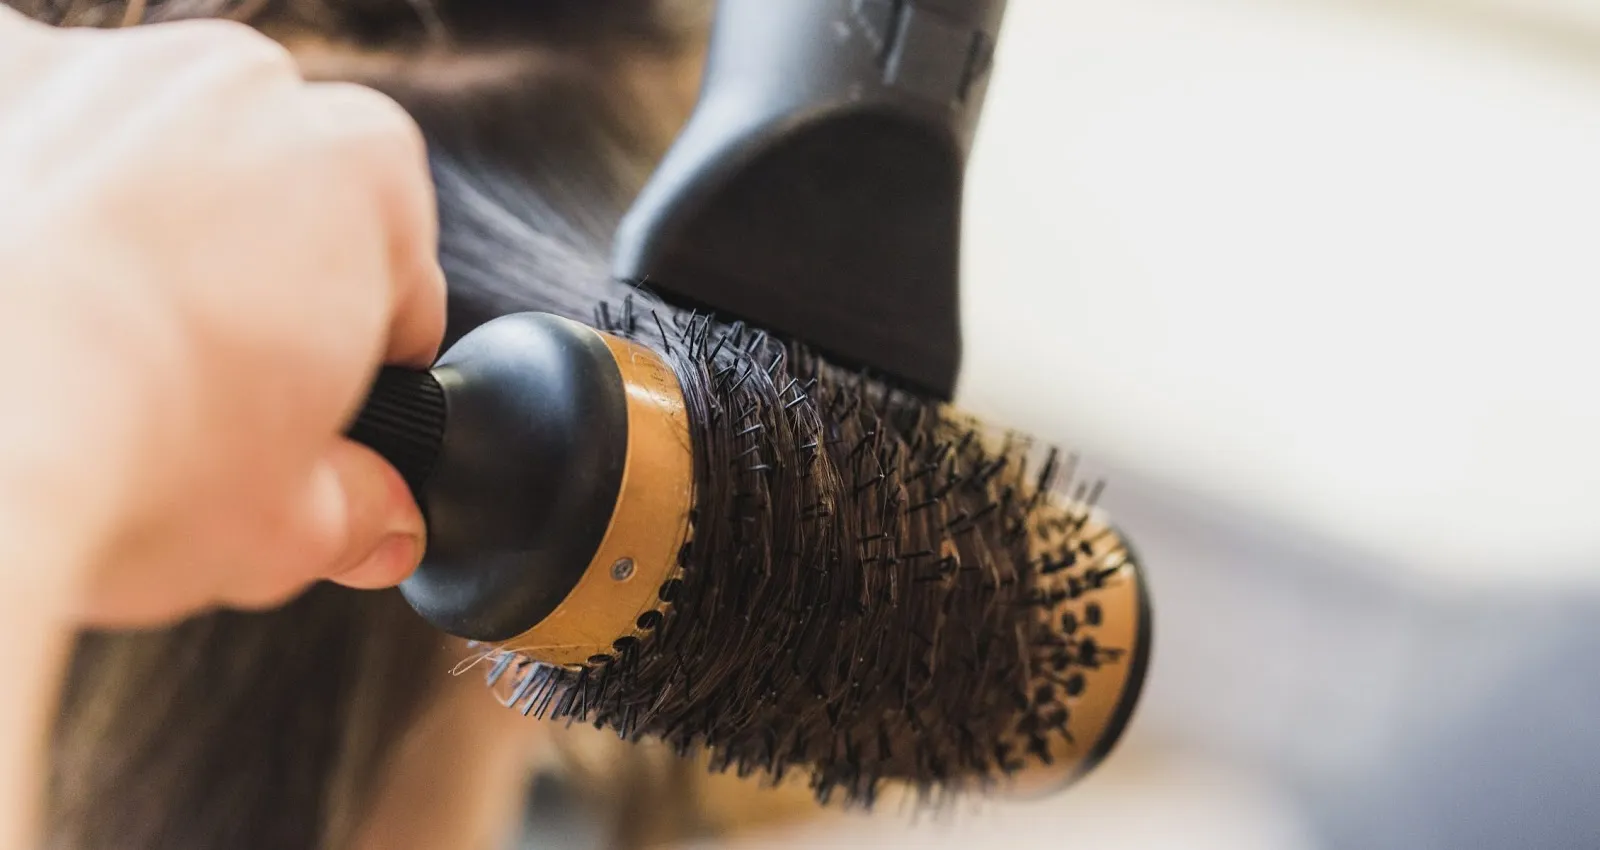 Cách làm phồng tóc siêu đơn giản giúp nàng thăng hạng nhan sắc